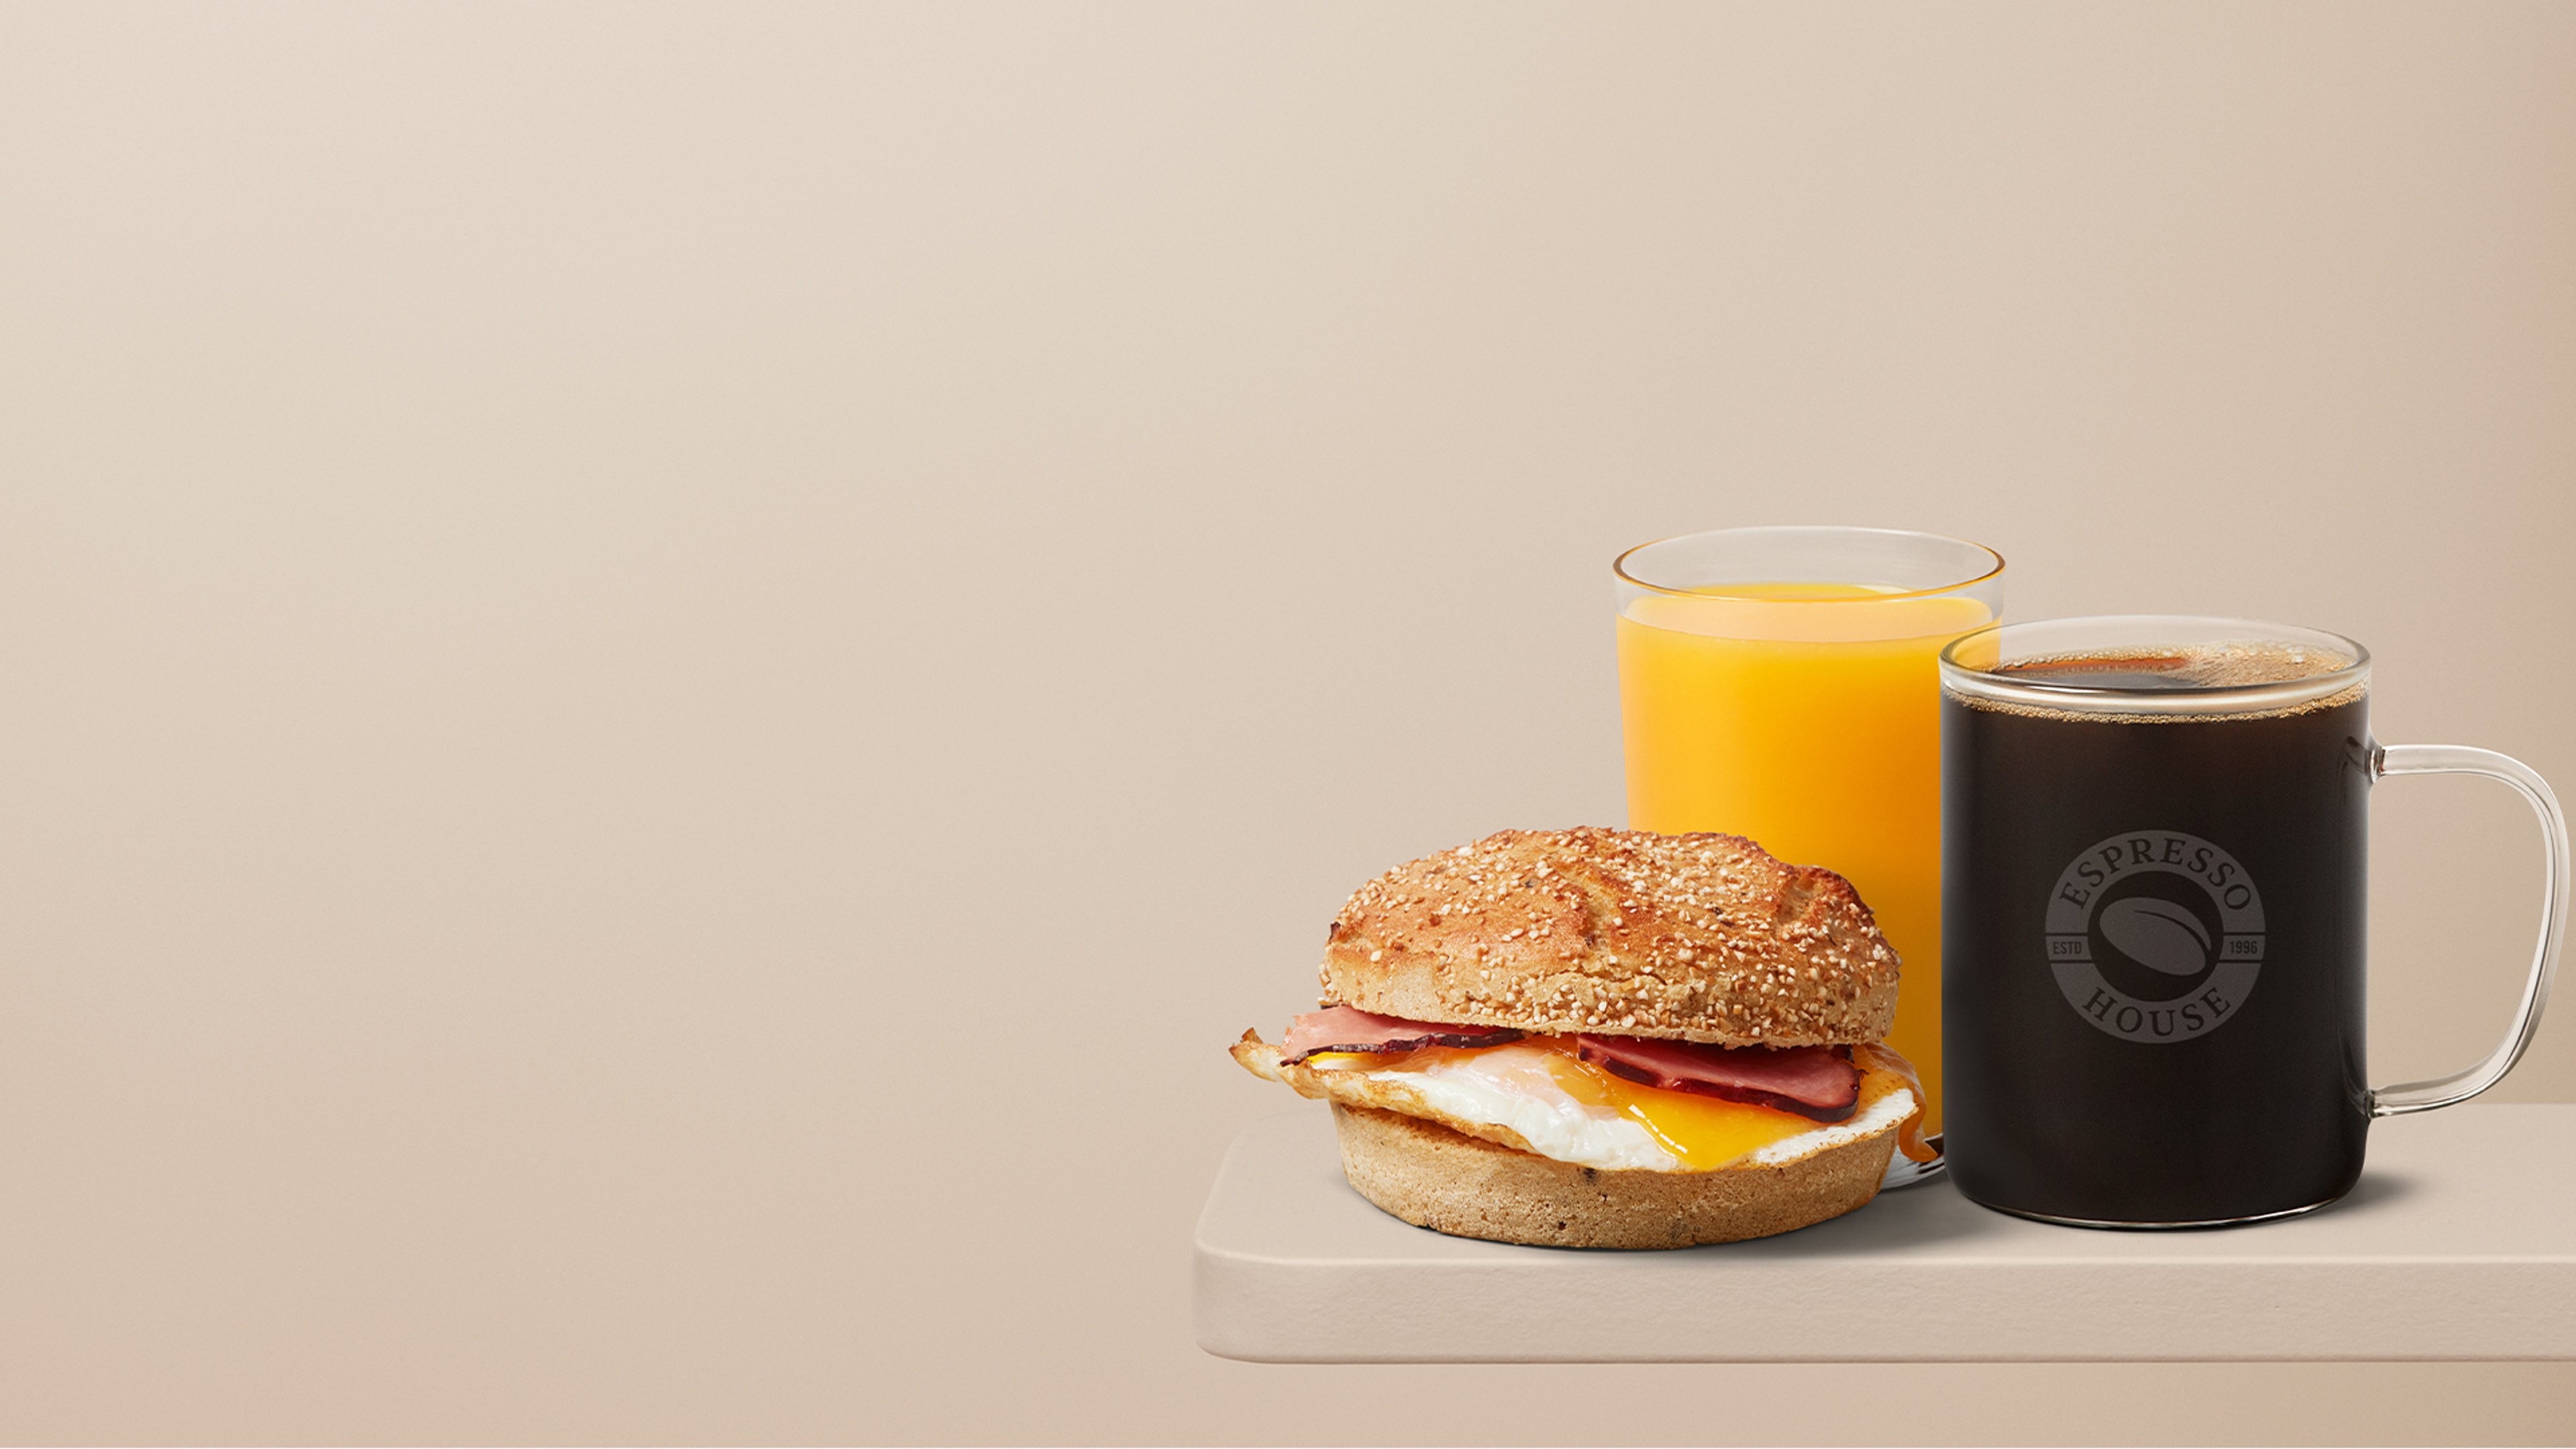 Lækre morgenmadstilbud hos Espresso House med kaffe, juice og varme morgenboller